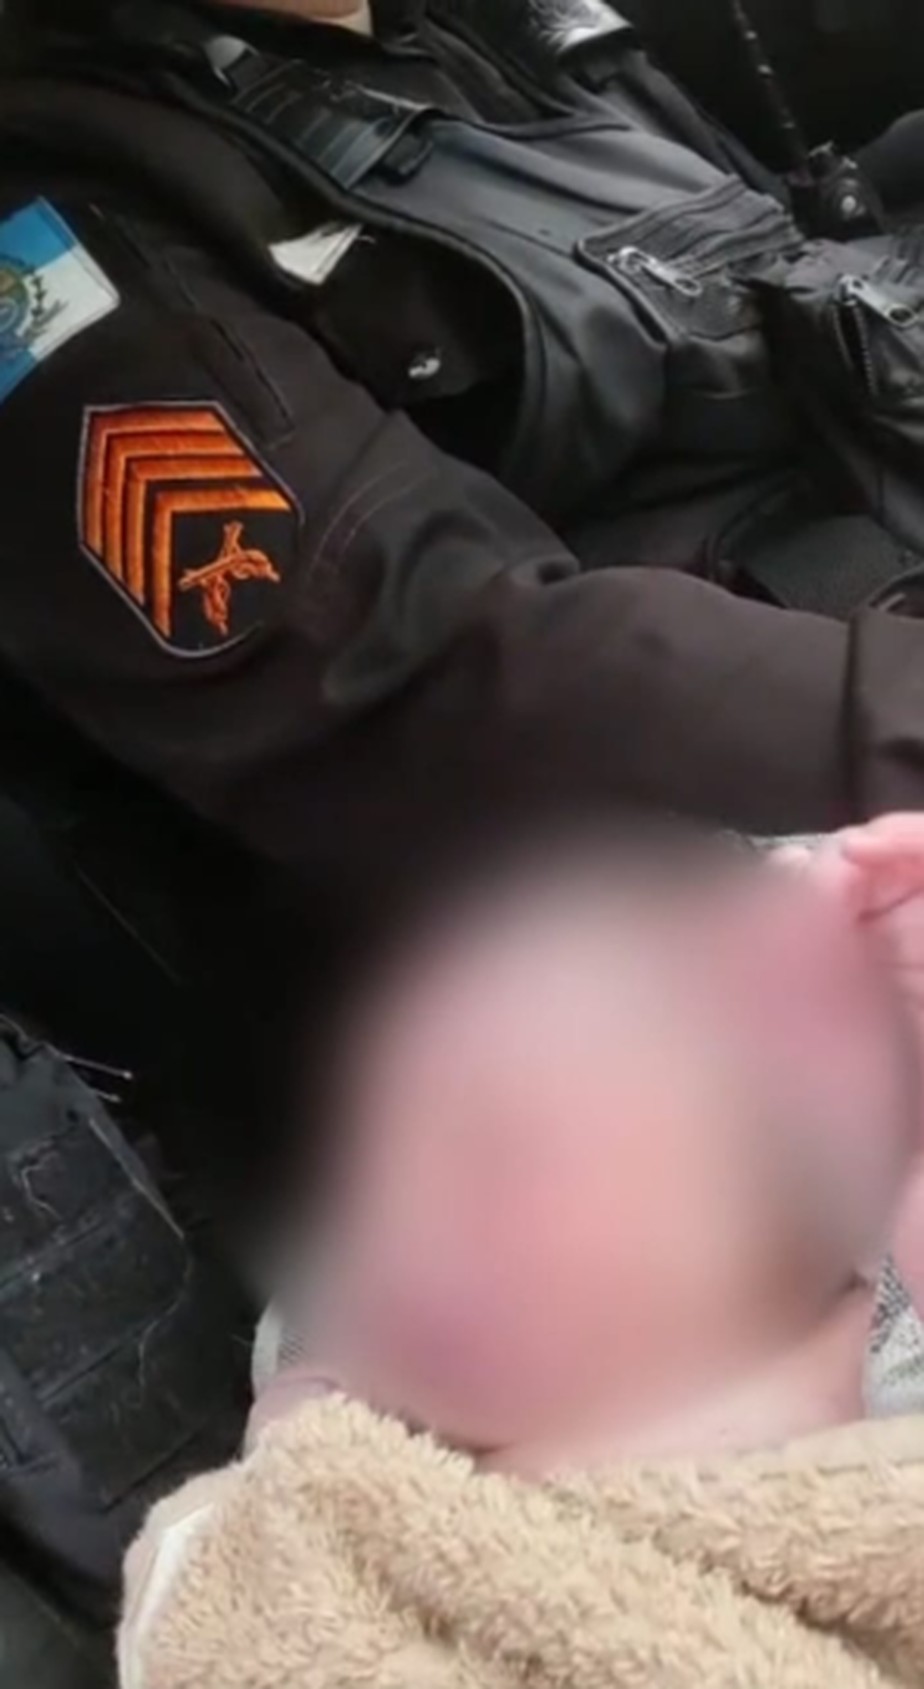 Bebê abandonado em sacola é resgatado por policiais